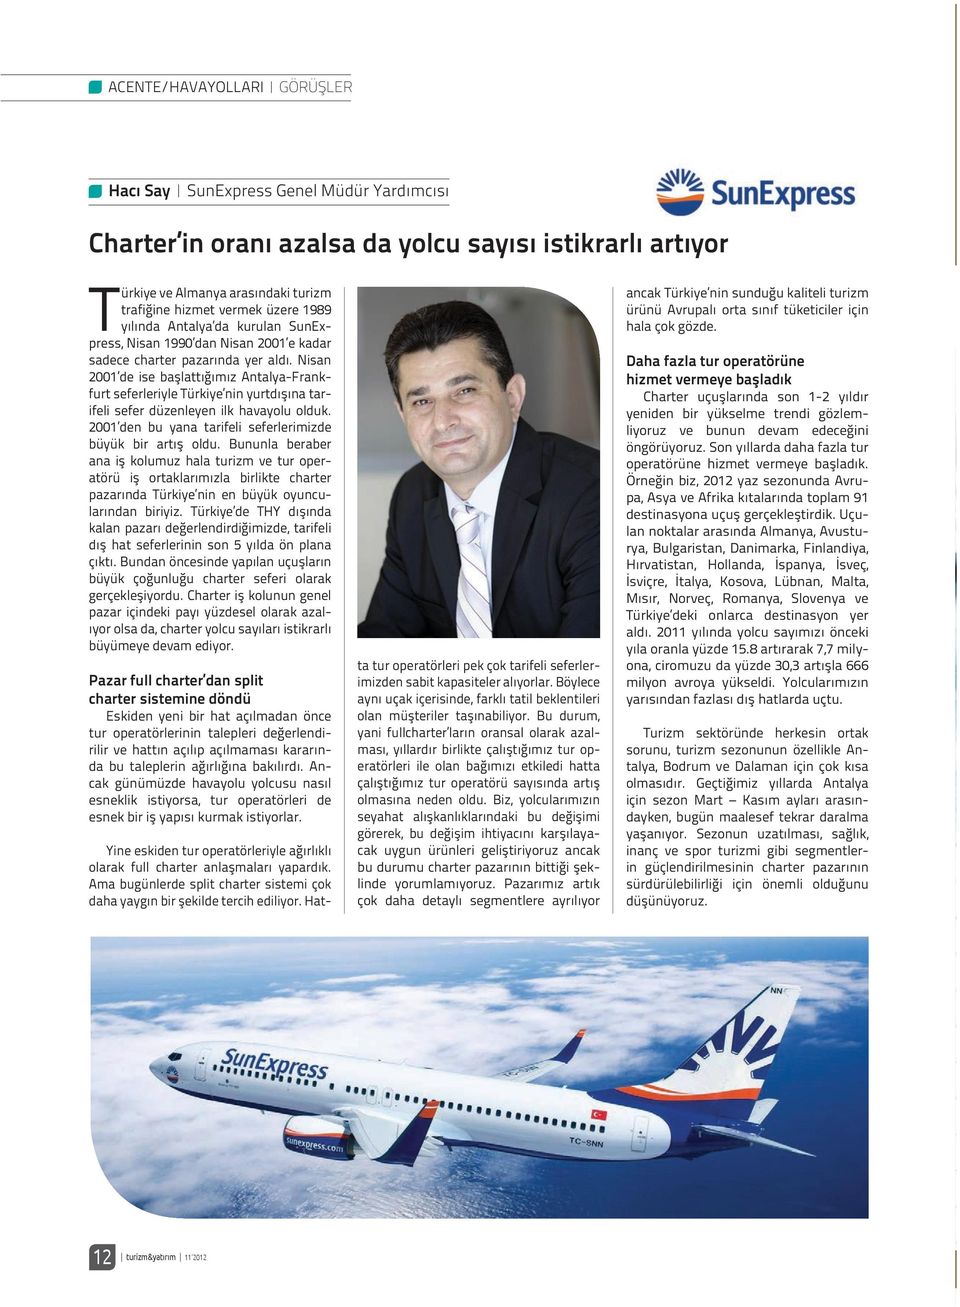 Nisan 2001 de ise başlattığımız Antalya-Frankfurt seferleriyle Türkiye nin yurtdışına tarifeli sefer düzenleyen ilk havayolu olduk. 2001 den bu yana tarifeli seferlerimizde büyük bir artış oldu.